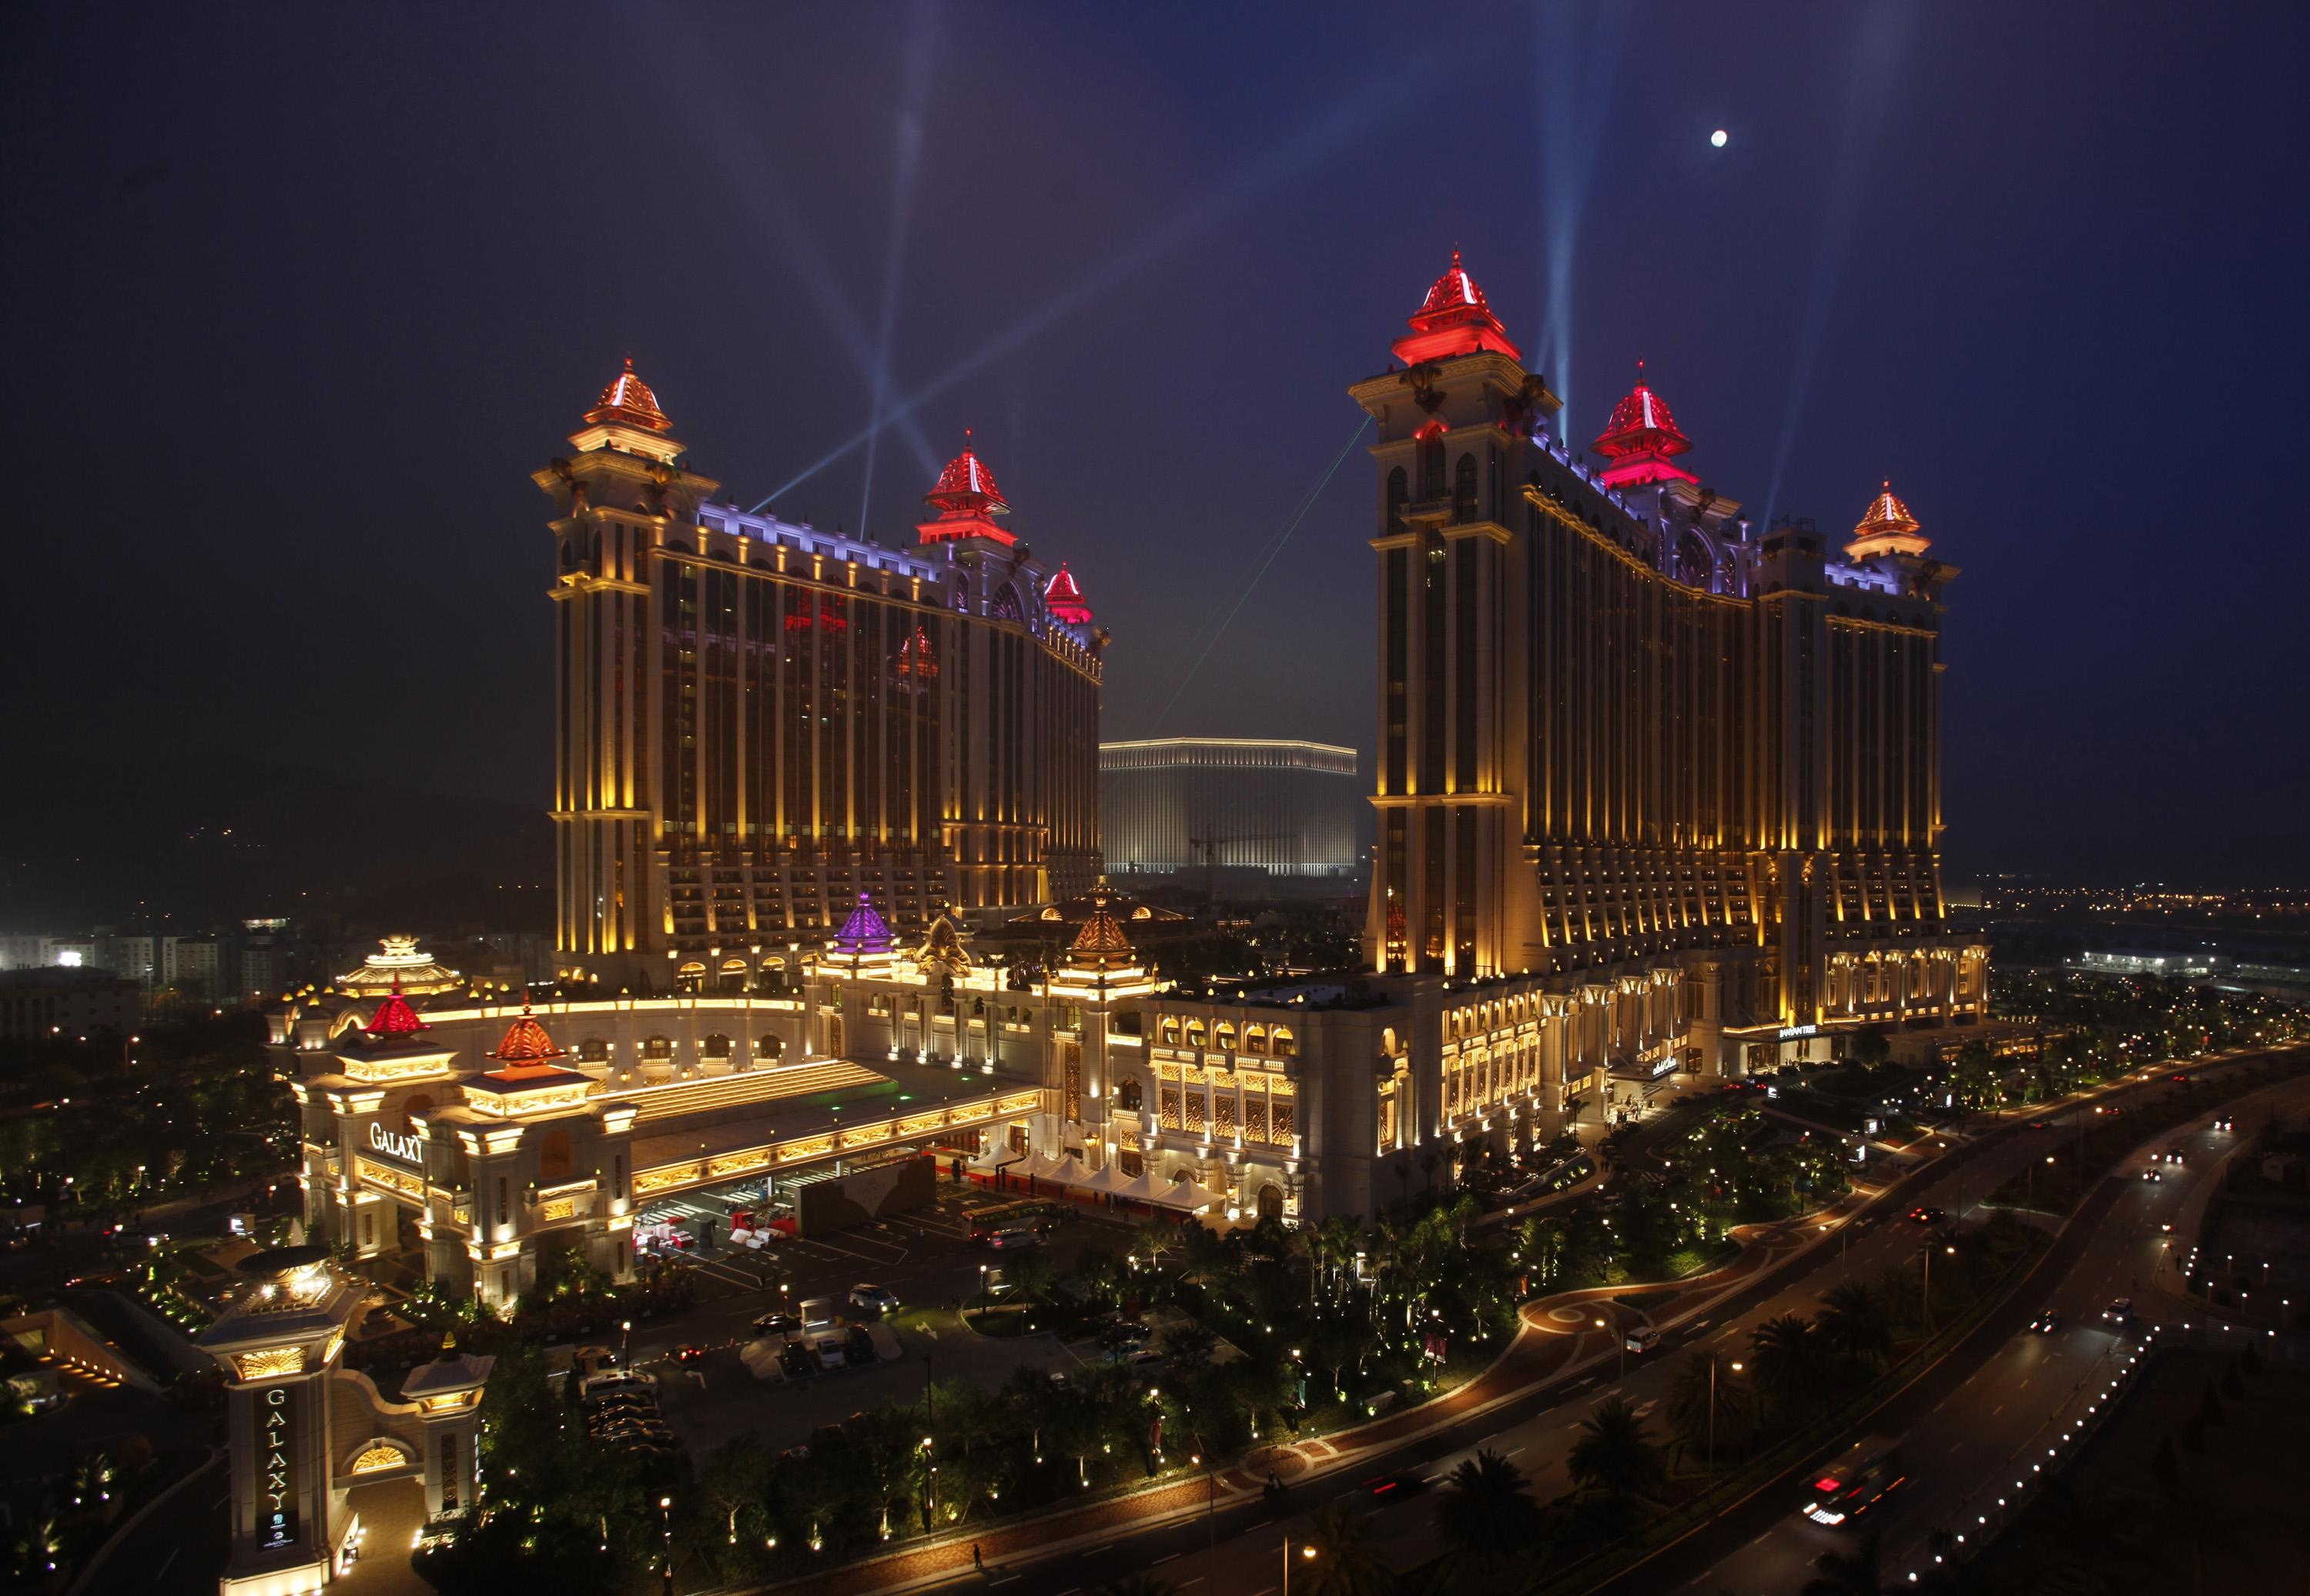 Macau artist jobs, Casino industry, Creative opportunities, Artistic pursuits, 3000x2080 HD Desktop